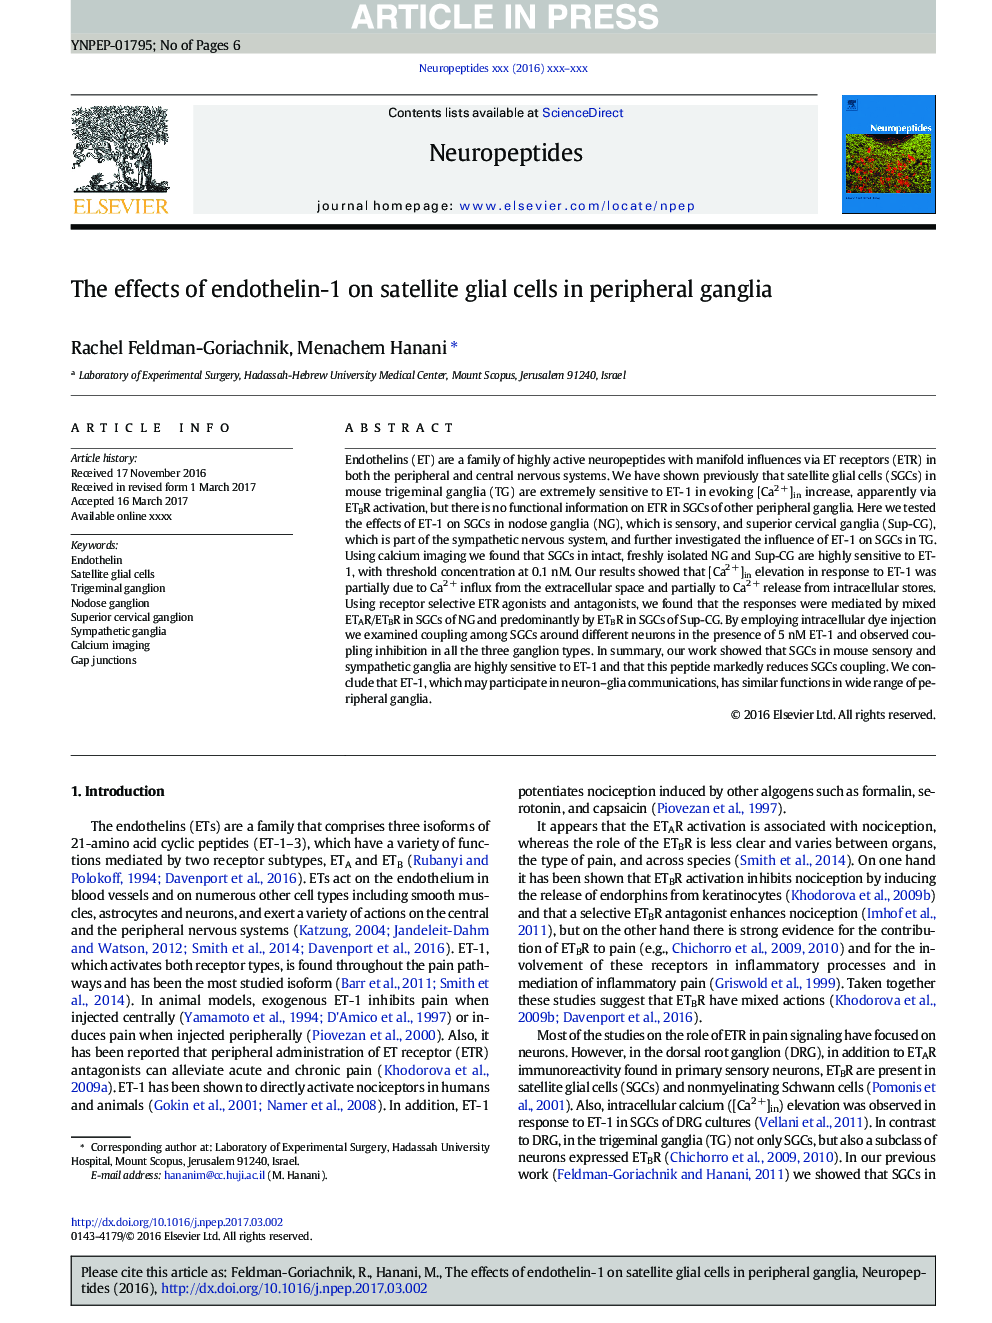 اثرات آندوتلین-1 بر سلولهای گلیال ماهواره ای در گانگلیس های محیطی 